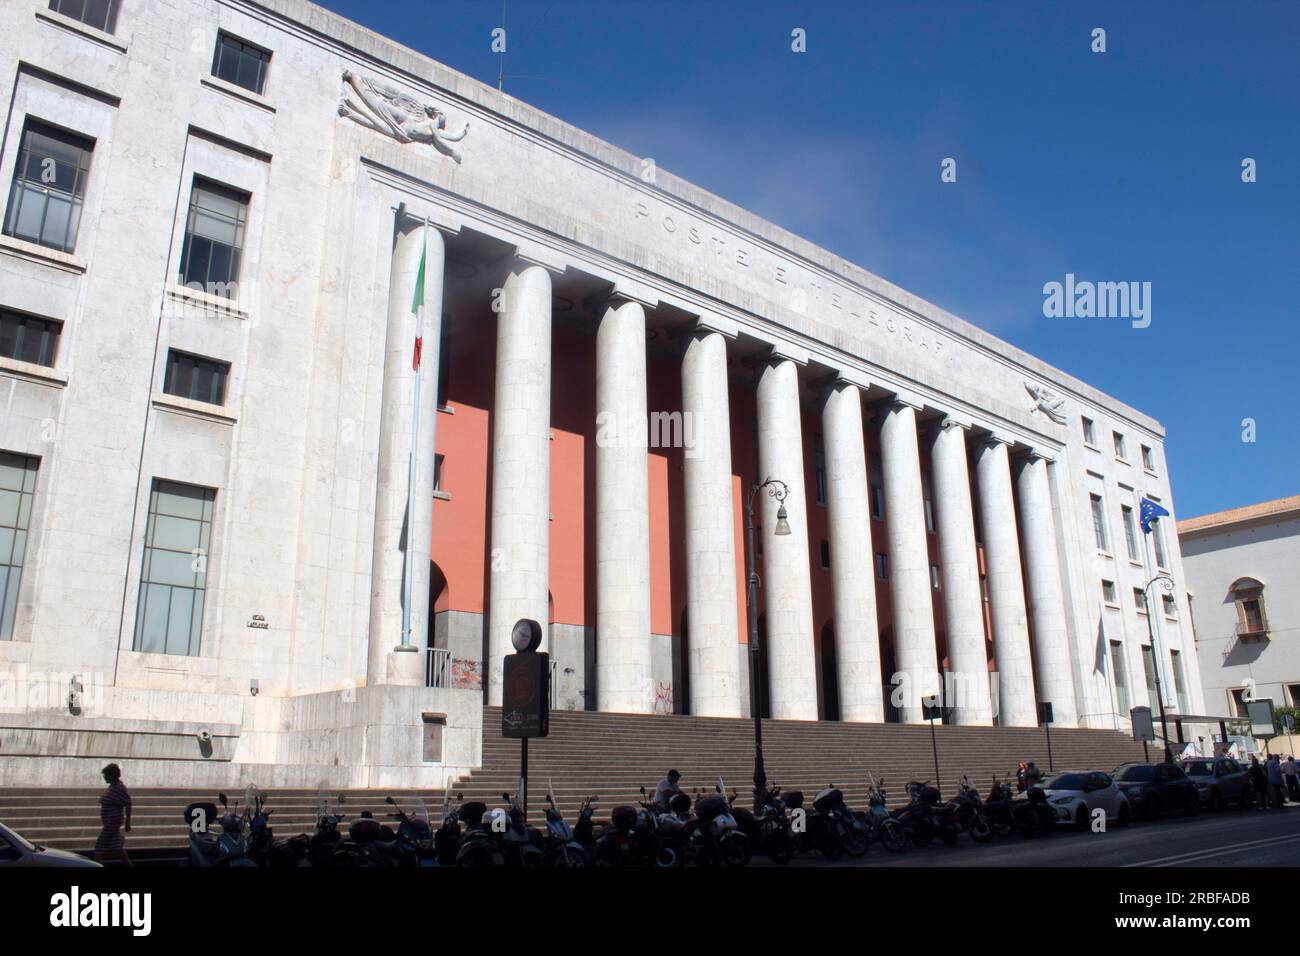 Palazzo delle poste ou Palazzo postale sur la via Roma à Palerme, Sicile, Italie Banque D'Images